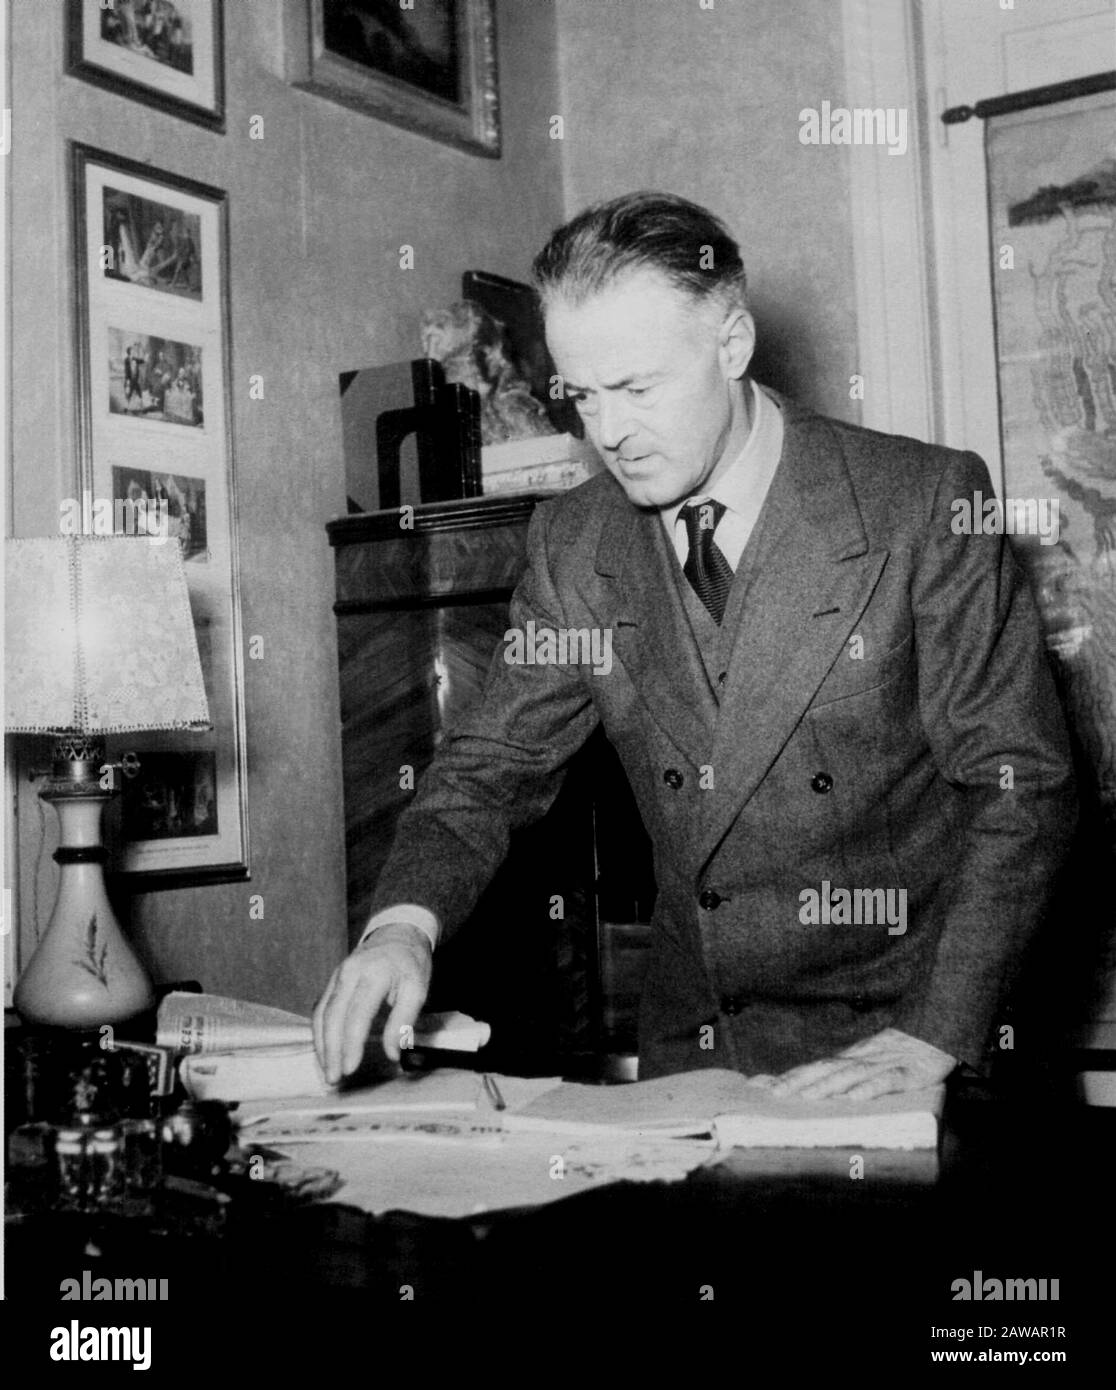 1950 Ca, ROMA, ITALIEN: Der italienische Richter, Spielautor, Dichter, Schriftsteller UGO BETTI (* 1892; † 1953) zu Hause in Rom ( in Via Orazio ). Freund von wri Stockfoto